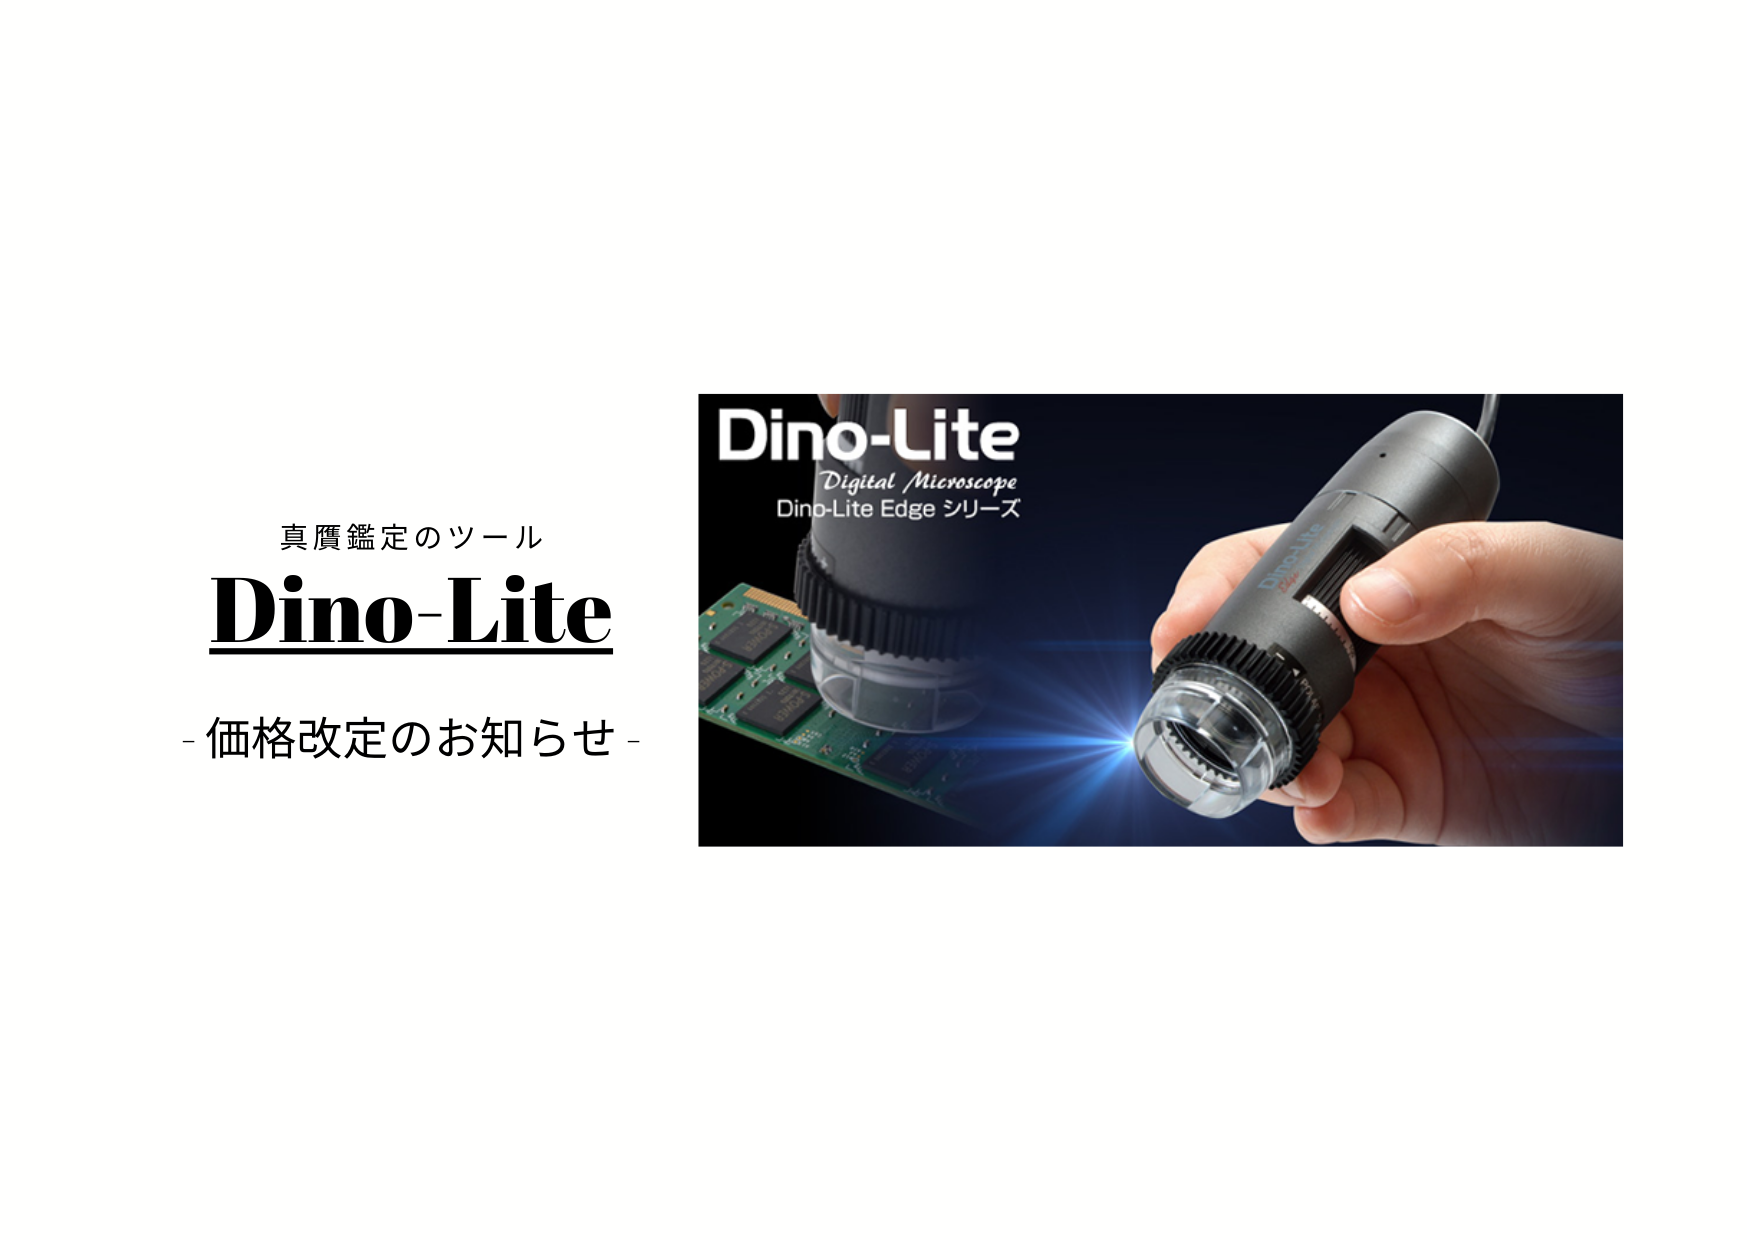 【価格改定のお知らせ】デジタルマイクロスコープ Dino-Lite